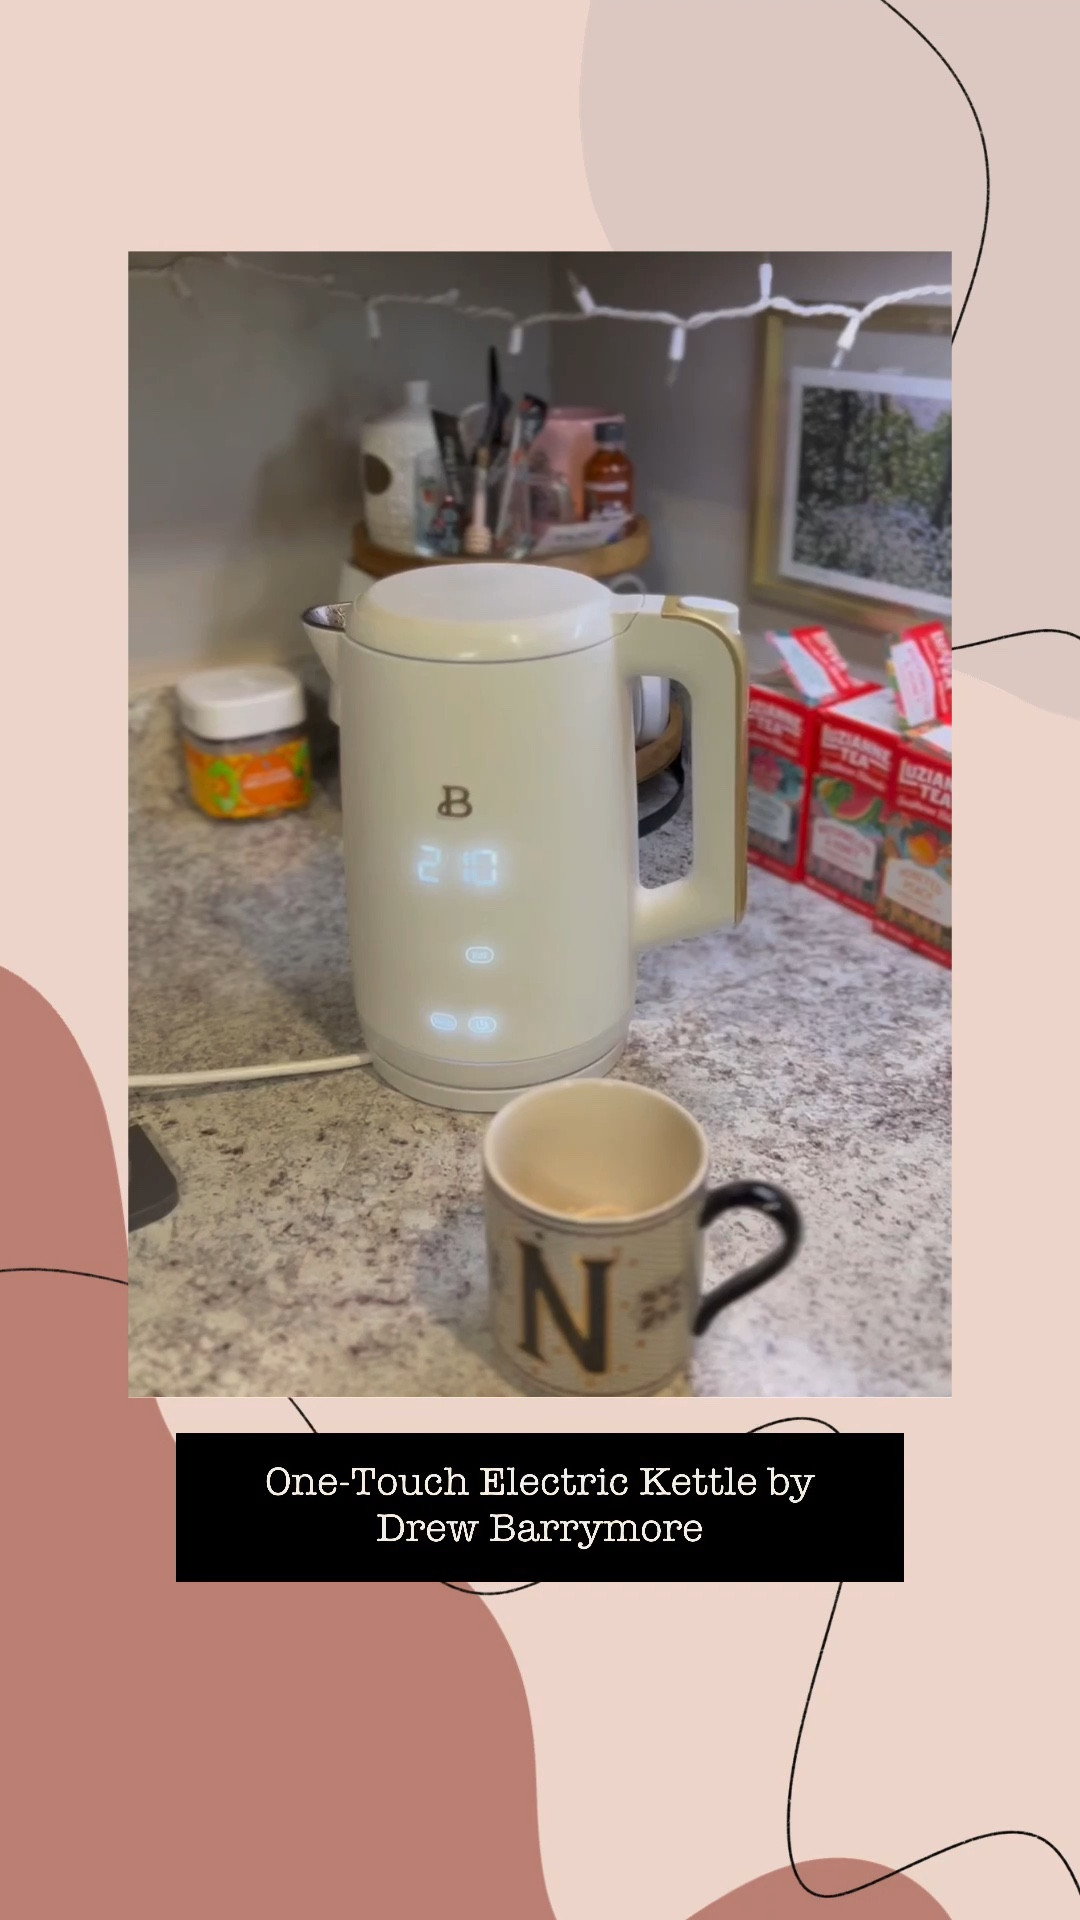 Drew Barrymore Kitchen Appliances, Electric Kettle, Kettle Touch, App  Kettle